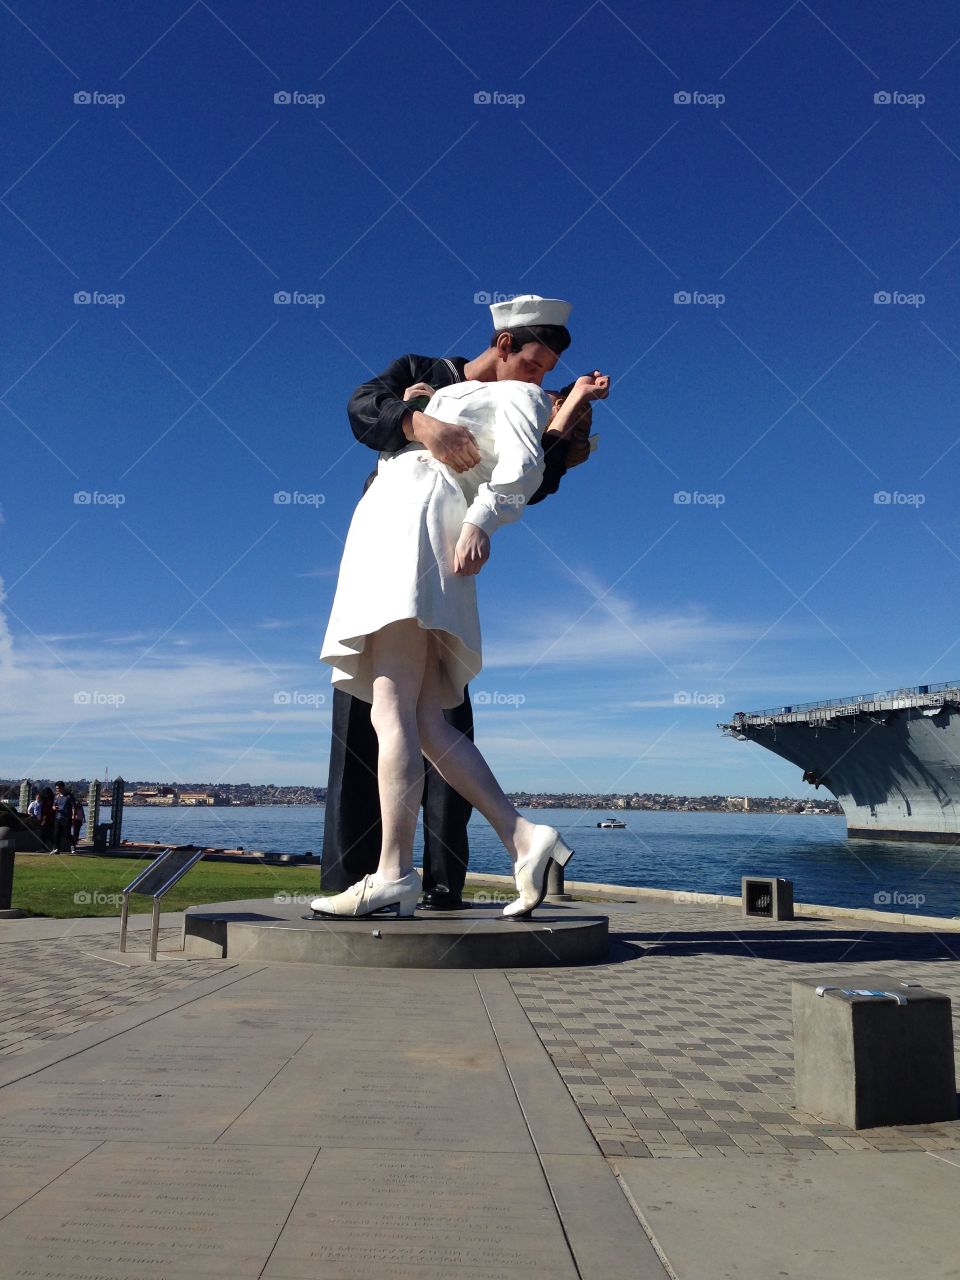 San Diego navy statue